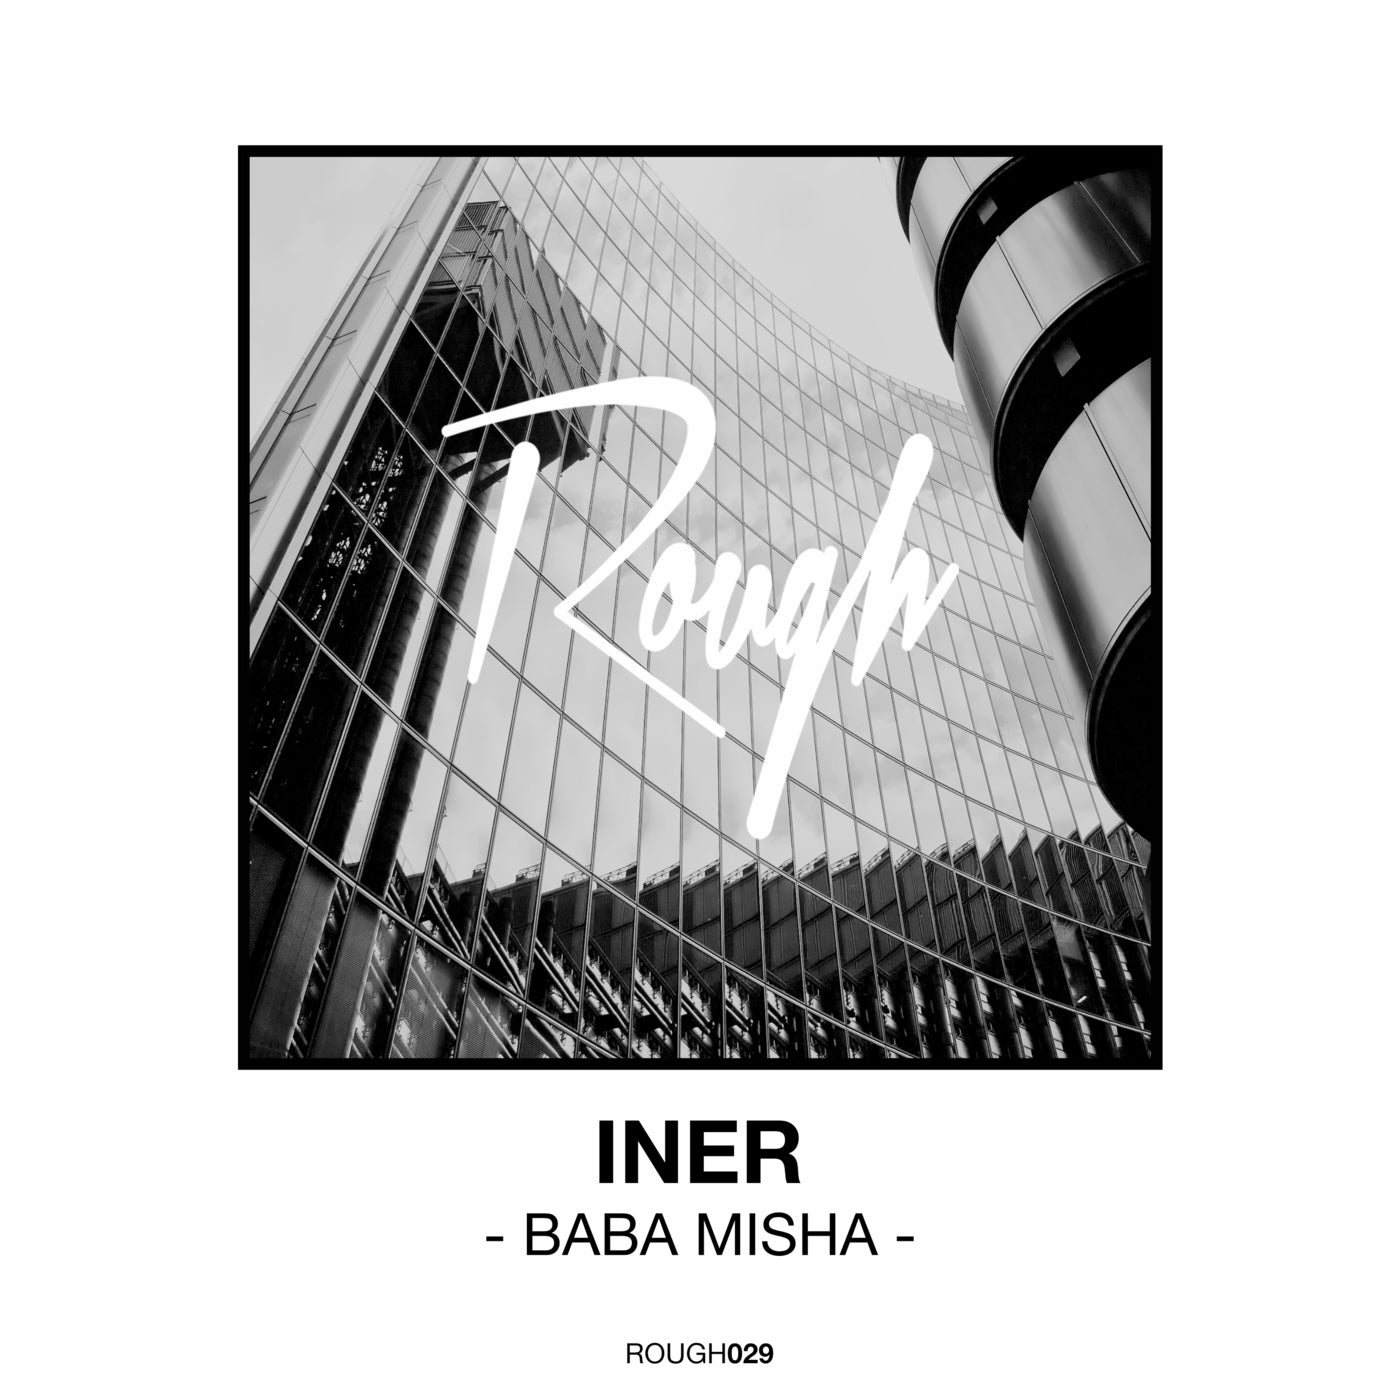 Iner - Baba Misha [ROUGH029]